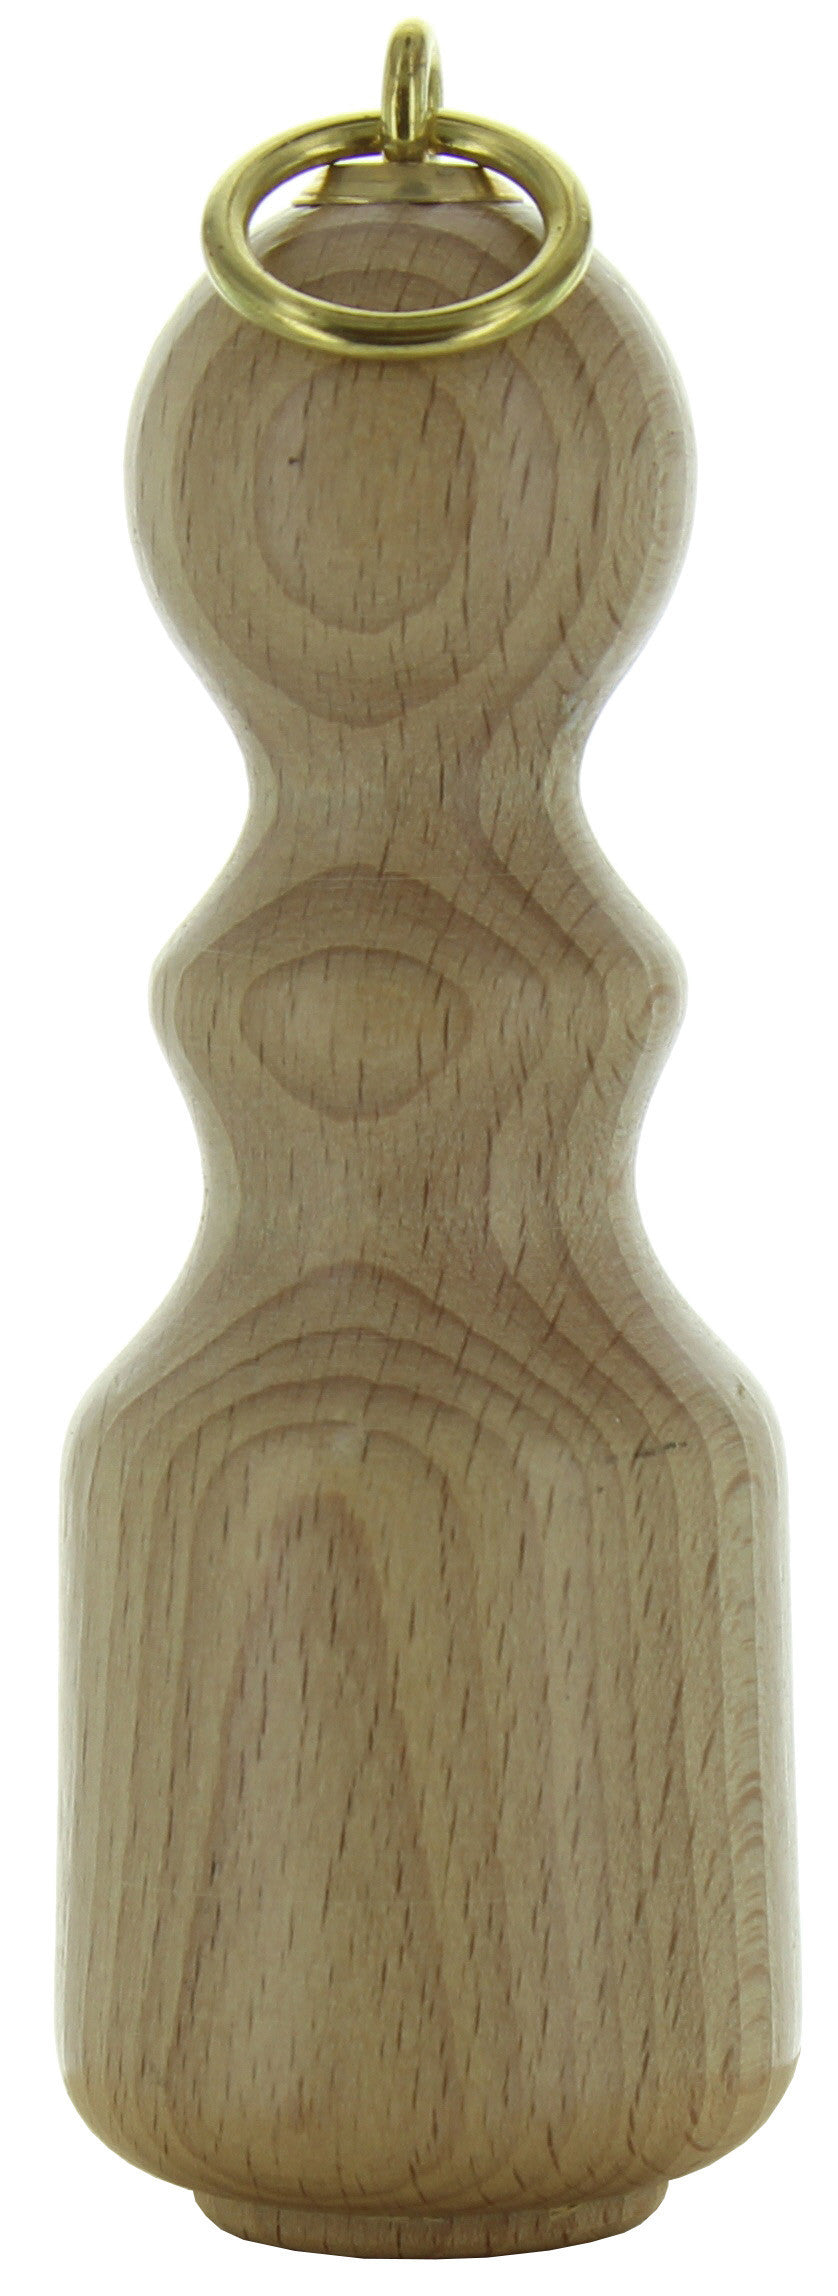 Bl fiocco in legno naturale art.611